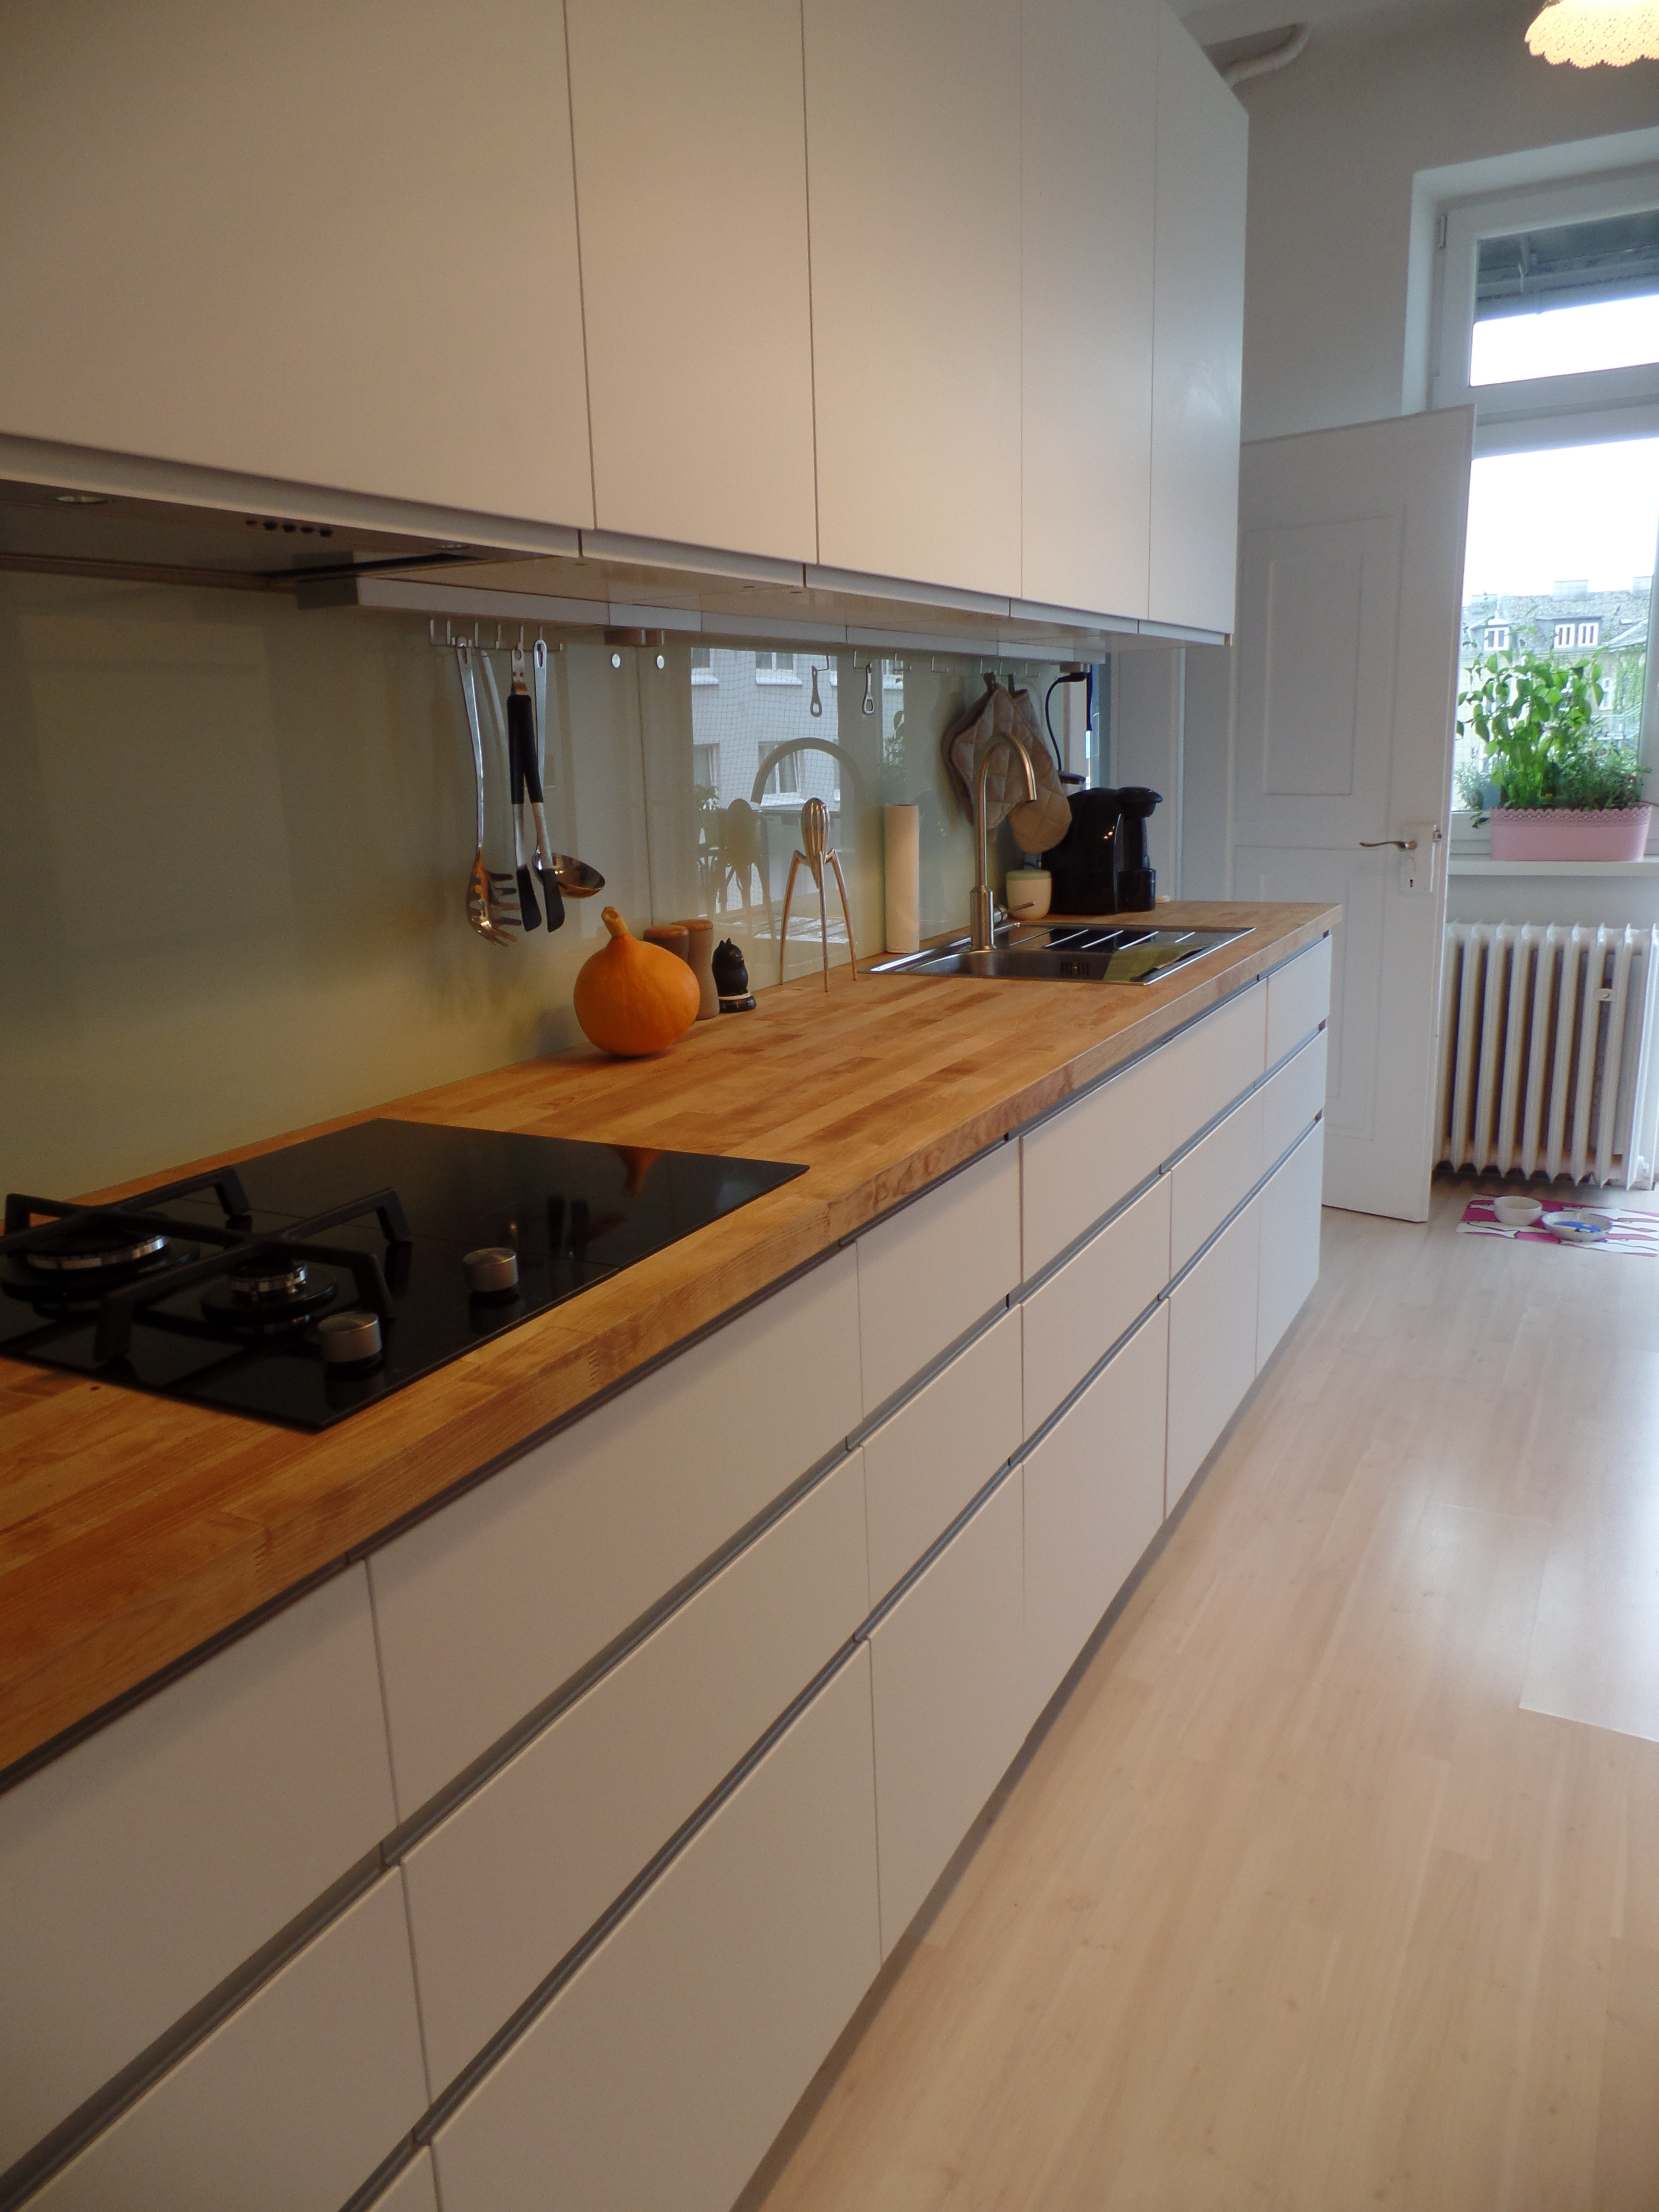 Küchenzeile Diy
 Unsere Ikea Küche mit Nodsta Front